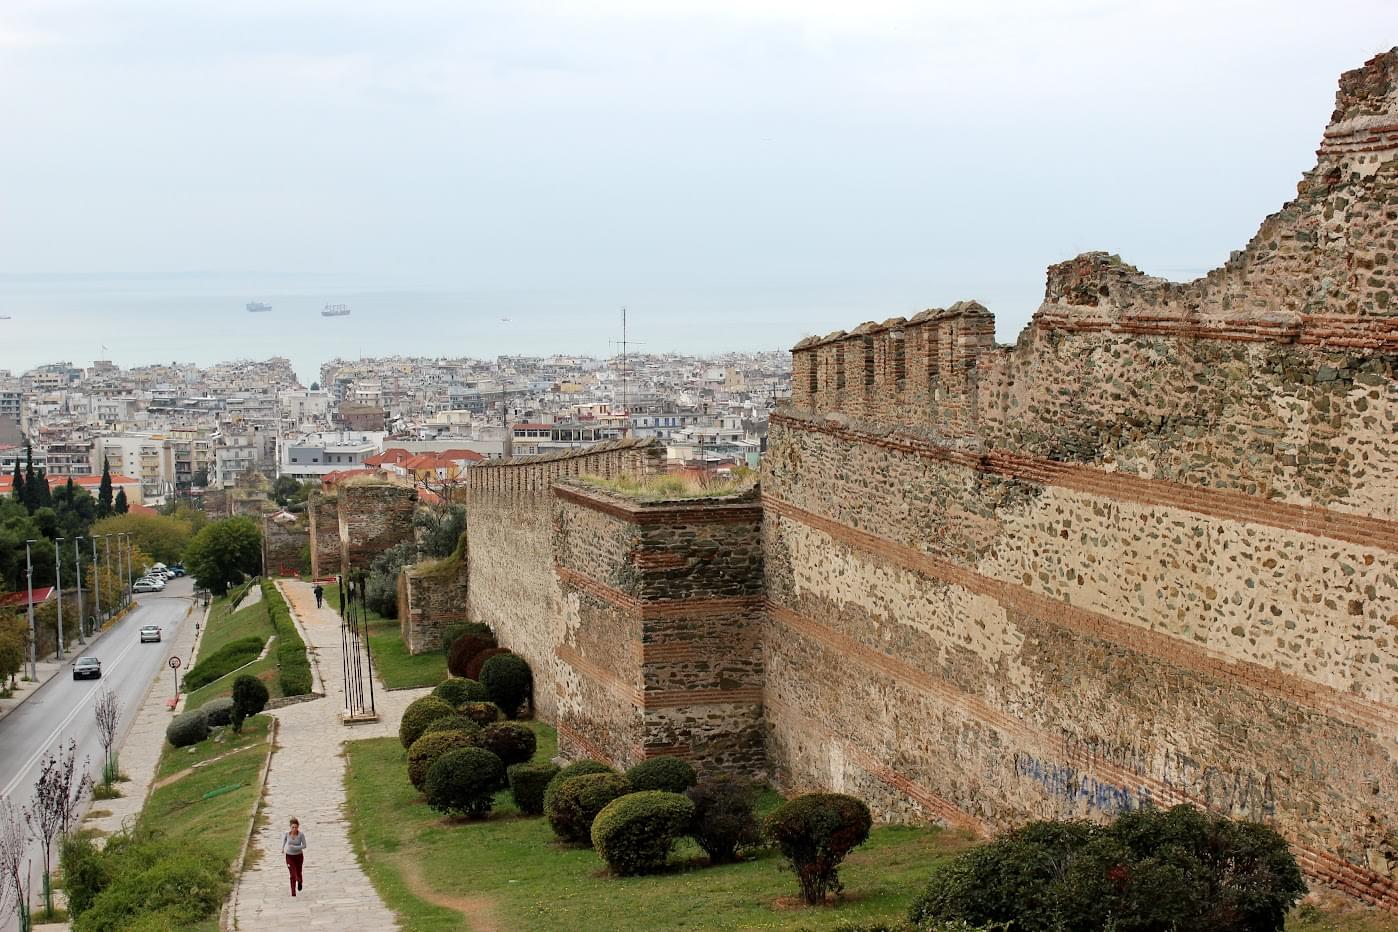  Acropolis of Thessaloniki